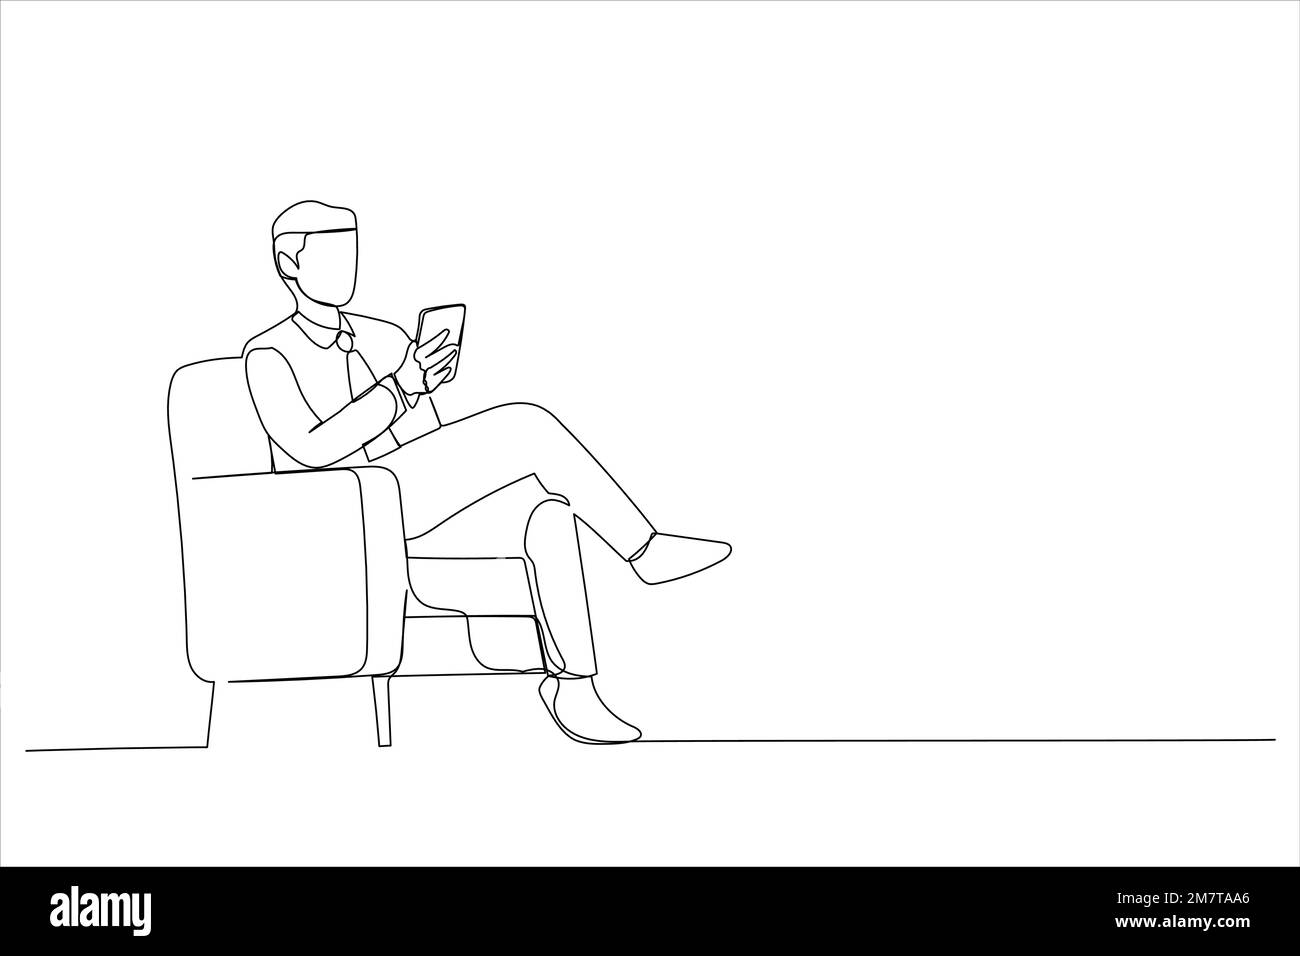 Dessin animé d'un gars utilisant un téléphone mobile avec une nouvelle application assis dans un fauteuil. Style de dessin au trait continu unique Illustration de Vecteur